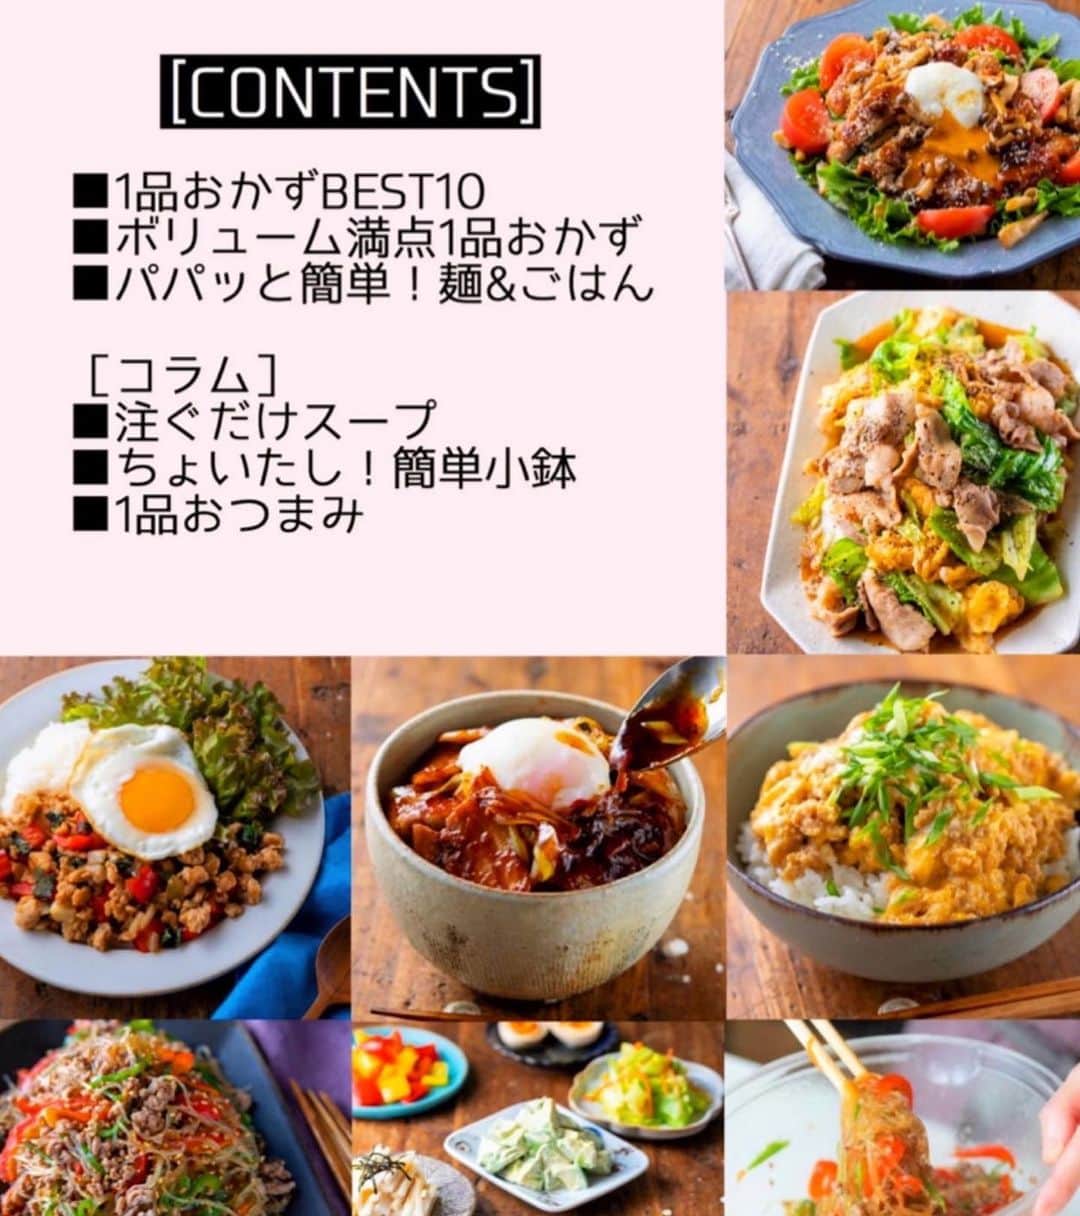 Mizuki【料理ブロガー・簡単レシピ】さんのインスタグラム写真 - (Mizuki【料理ブロガー・簡単レシピ】Instagram)「・﻿ 【本日発売 】ーーーーーーーーーーー﻿ 《ラクしておいしい！#1品晩ごはん 》﻿ ーーーーーーーーーーーーーーーーー﻿ ﻿ ﻿ ﻿ おはようございます(*^^*)﻿ ﻿ 本日、新刊﻿ 【ラクしておいしい！1品晩ごはん】﻿ ￣￣￣￣￣￣￣￣￣￣￣￣￣￣￣￣﻿ が、発売となりましたm(_ _)m﻿ ﻿ ﻿ 疲れてヘトヘトな日•••﻿ 現実的に余裕がない日•••﻿ ごはんに悩みたくない日•••﻿ ﻿ この本は、そんな時に﻿ 【1品ごはん】はいかがでしょう？﻿ というご提案です✨﻿ ﻿ ﻿ ﻿ ﻿ 【1品ごはん】はその名の通り﻿ 1品つくるだけでいいから﻿ 献立を考えなくてよし！﻿ ￣￣￣￣￣￣￣￣￣￣￣￣￣￣￣￣￣﻿ 副菜いらずで材料も手順もシンプル！﻿ ￣￣￣￣￣￣￣￣￣￣￣￣￣￣￣￣￣﻿ 悩まない、疲れない、﻿ 気力や時間がなくてもなんとかなる！﻿ ￣￣￣￣￣￣￣￣￣￣￣￣￣￣￣￣￣﻿ そんな頼りになる﻿ 便利なお助けごはんです(*^^*)﻿ ﻿ ﻿ ﻿ ﻿ SNSがこんなにも普及して﻿ どこかのおうちの''すごいごはん''を﻿ 目にすることも多くなりましたね！﻿ でも私にとってそれはどこか非現実的で﻿ 『いいな〜』とは思うものの﻿ 実際やることはありません💦﻿ (これほんとの話しです.笑)﻿ 毎日何かに追われているし﻿ 理想と現実は違いますね﻿ 特にコロナ禍でごはんを作る機会が増え﻿ それが重荷になることもあるでしょう。﻿ ﻿ 時間がある時、心に余裕がある時は﻿ 存分に手をふるえばいいし﻿ そうでない時はできることをやればいい。﻿ できなければお惣菜とか冷食に頼る、﻿ それも全く問題ないことだと思っています。﻿ ﻿ つまりは、家庭のごはんって﻿ 1品でも2品でも3品でも10品でもよくて﻿ 1日3食でバランスがとれたらOKかな﻿ なんて考えていて。﻿ 1品ごはんを打ち出すことで﻿ 誰かの選択肢が増えて﻿ 気持ちがラクになればいいなって﻿ そんな風に思ってこの本を作りました♩﻿ ﻿ 時にはお肉をドーンと焼いたら﻿ 副菜代わりに生野菜を添える。﻿ なんか、これでじゅうぶんだなって(*^^*)﻿ ﻿ ﻿ ﻿ ﻿ ﻿ さて、この本にはレシピブログさんで﻿ 5年前から担当している連載﻿ ［簡単レシピとテーブルスタイリング］から﻿ レシピを選りすぐり、更に改良し﻿ 新規もたくさん盛り込みました🍳﻿ ﻿ \\全130品//﻿ ﻿ おうちごはんが増えた今﻿ 料理を構えず、肩の力を抜けるような﻿ そんな内容になっていると思います☺️﻿ ﻿ ﻿ ﻿ ﻿ 【contents】﻿ ーーーーーPART.1 ーーーーーー﻿ 🔶1品おかずBEST10 ﻿ 連載でご紹介したレシピの中から﻿ とくに人気&アクセス数が多かった﻿ 1品おかず10点をランキングで掲載☆﻿ ﻿ ーーーーーPART.2 ーーーーーー﻿ 🔶ボリューム満点1品おかず ﻿ 鶏肉、豚肉、ひき肉、魚介類ごとに﻿ 簡単で食べごたえのある1品おかずが満載﻿ ﻿ ーーーーー PART.3 ーーーーー﻿ 🔶パパッと簡単 麺&ごはん ﻿ 簡単につくれて家族が喜ぶ﻿ ボリューム満点の麺&ごはんレシピ！﻿ ﻿ ーーーーーコラムーーーーー﻿ 🔶ちょいたし！注ぐだけスープ﻿ 具材を入れてお湯を注ぐだけ！の﻿ 超簡単即席スープ♩﻿ 🔶ちょいたし！簡単小鉢 ﻿ 1~2素材で作れて味つけもシンプルな﻿ お手軽小鉢を考えました♩﻿ 🔶1品おつまみ ﻿ 飲みたくなったときに﻿ すぐに乾杯できる簡単おつまみをご紹介♩﻿ ﻿ という盛り沢山な内容になっています✨﻿ ーーーーーーーーーーーーーーーーーー﻿ ﻿ ﻿ ﻿ ﻿ 一汁三菜という伝統を重んじること﻿ それはもちろん素晴らしい。﻿ だけれども私達の生活は多様化し﻿ 確実に変わってきています。﻿ ﻿ その中で料理とは長く付き合うものですし﻿ あまり無理をし過ぎないことが﻿ 大切なのかな〜って(*^^*)﻿ ﻿ この本が少しでも﻿ 皆さんのお役に立ちますように。﻿ 少しでも気持ちを軽くする﻿ お手伝いができますように☺️﻿ ﻿ ﻿ ﻿ ﻿ ﻿ ﻿ #新刊#本日発売#Mizuki#簡単レシピ#時短レシピ#節約レシピ#料理#フーディーテーブル#マカロニメイト#おうちごはん#デリスタグラマー#料理好きな人と繋がりたい#食べ物#料理記録#おうちごはんlover#写真好きな人と繋がりたい#foodpic#cooking#recipe#lin_stagrammer#foodporn#yummy#f52grams」12月22日 9時47分 - mizuki_31cafe